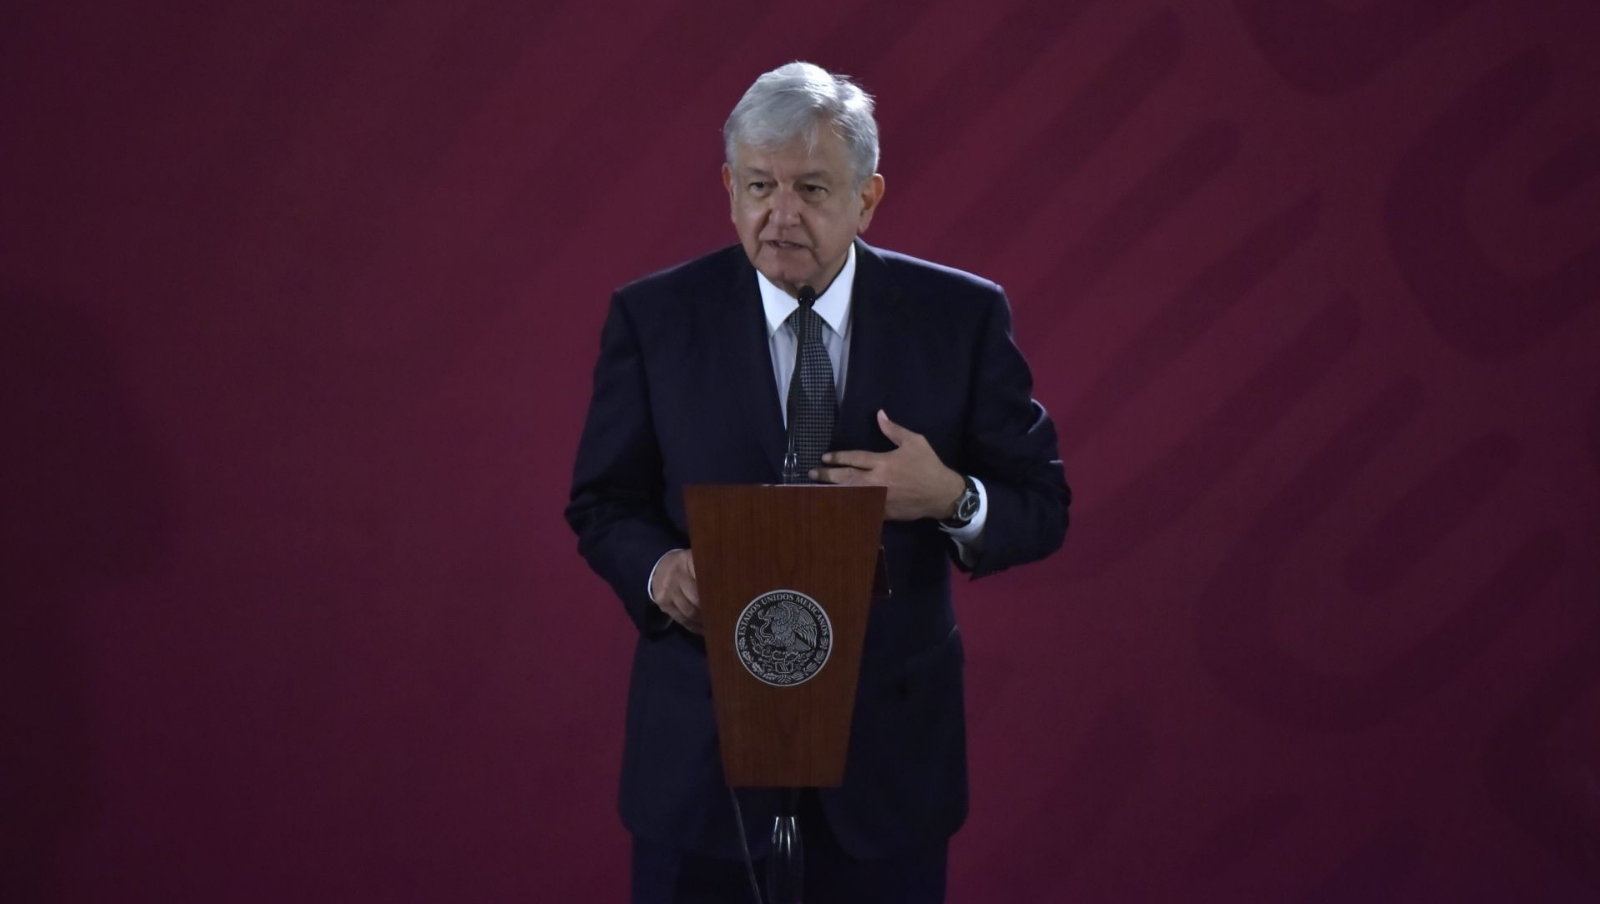 López Obrador arremete sobre denuncia de Lozoya: 'El pueblo se cansa de tanta pinche transa’